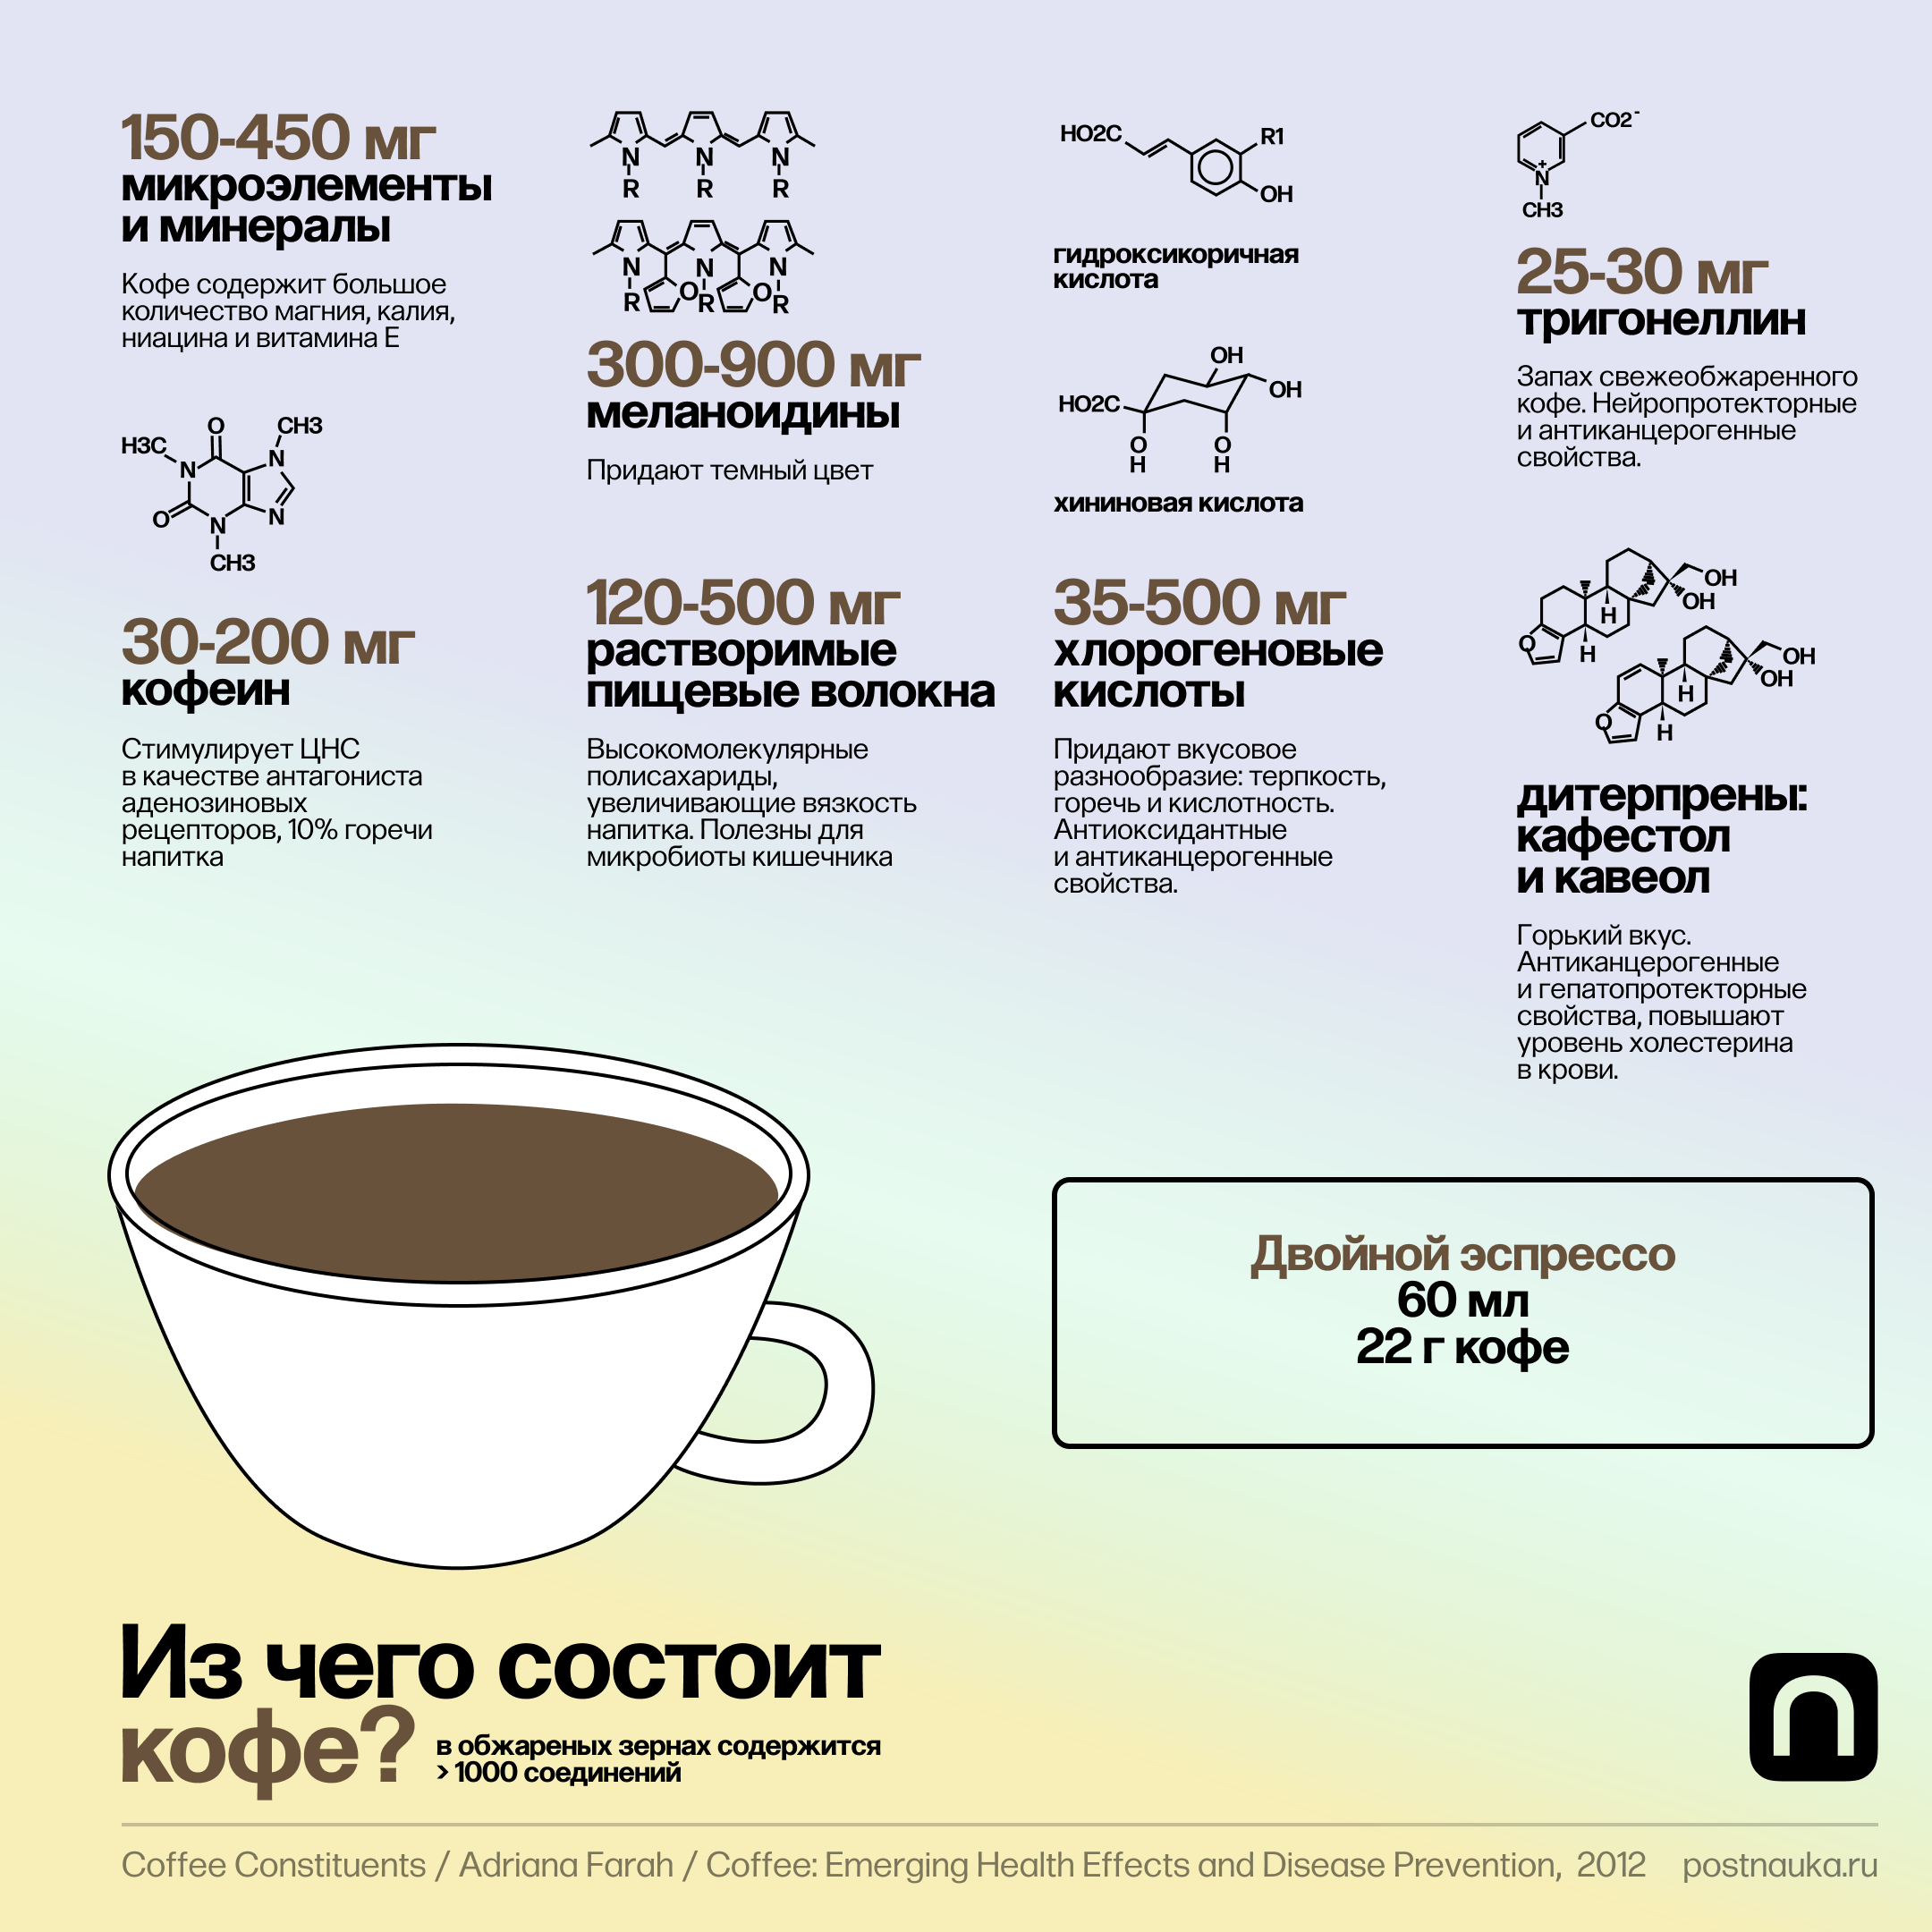 Давление эспрессо. Разные типы кофе. Разнообразие видов кофе. Из чего состоит кофе. Разнообразие кофейных напитков.